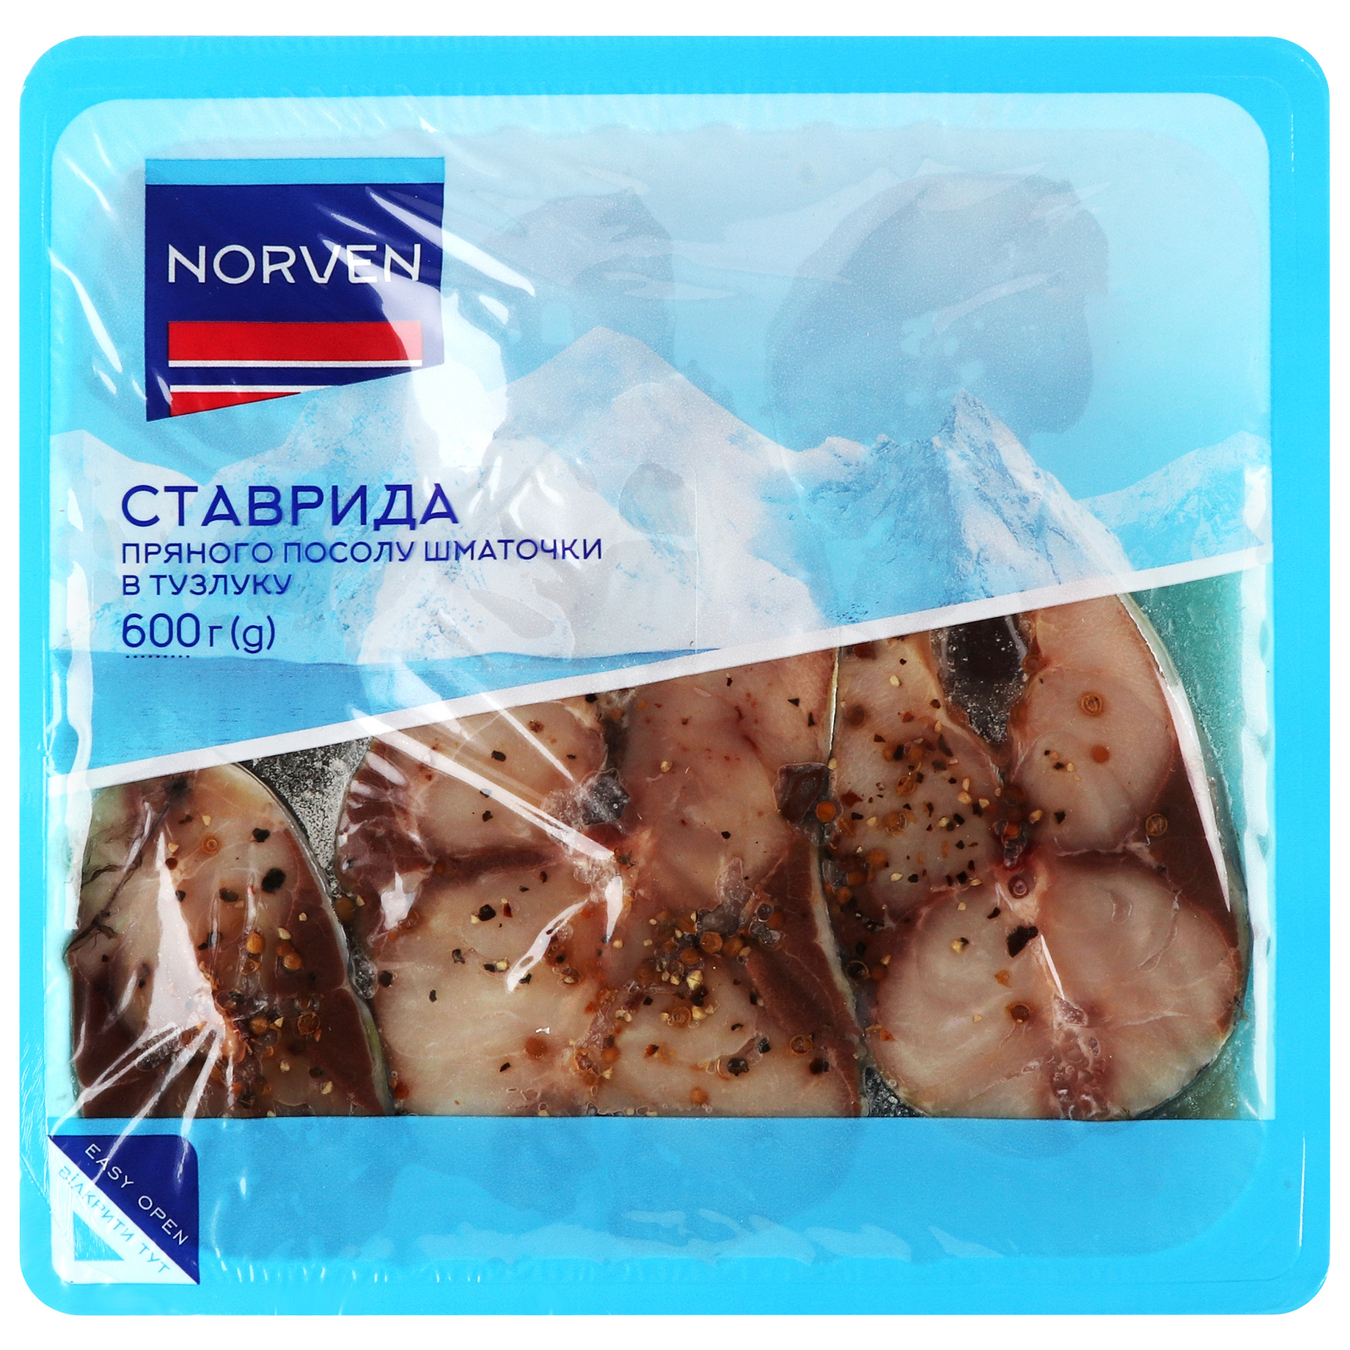 Horse mackerel Norven spicy salt pieces in pickle 600g